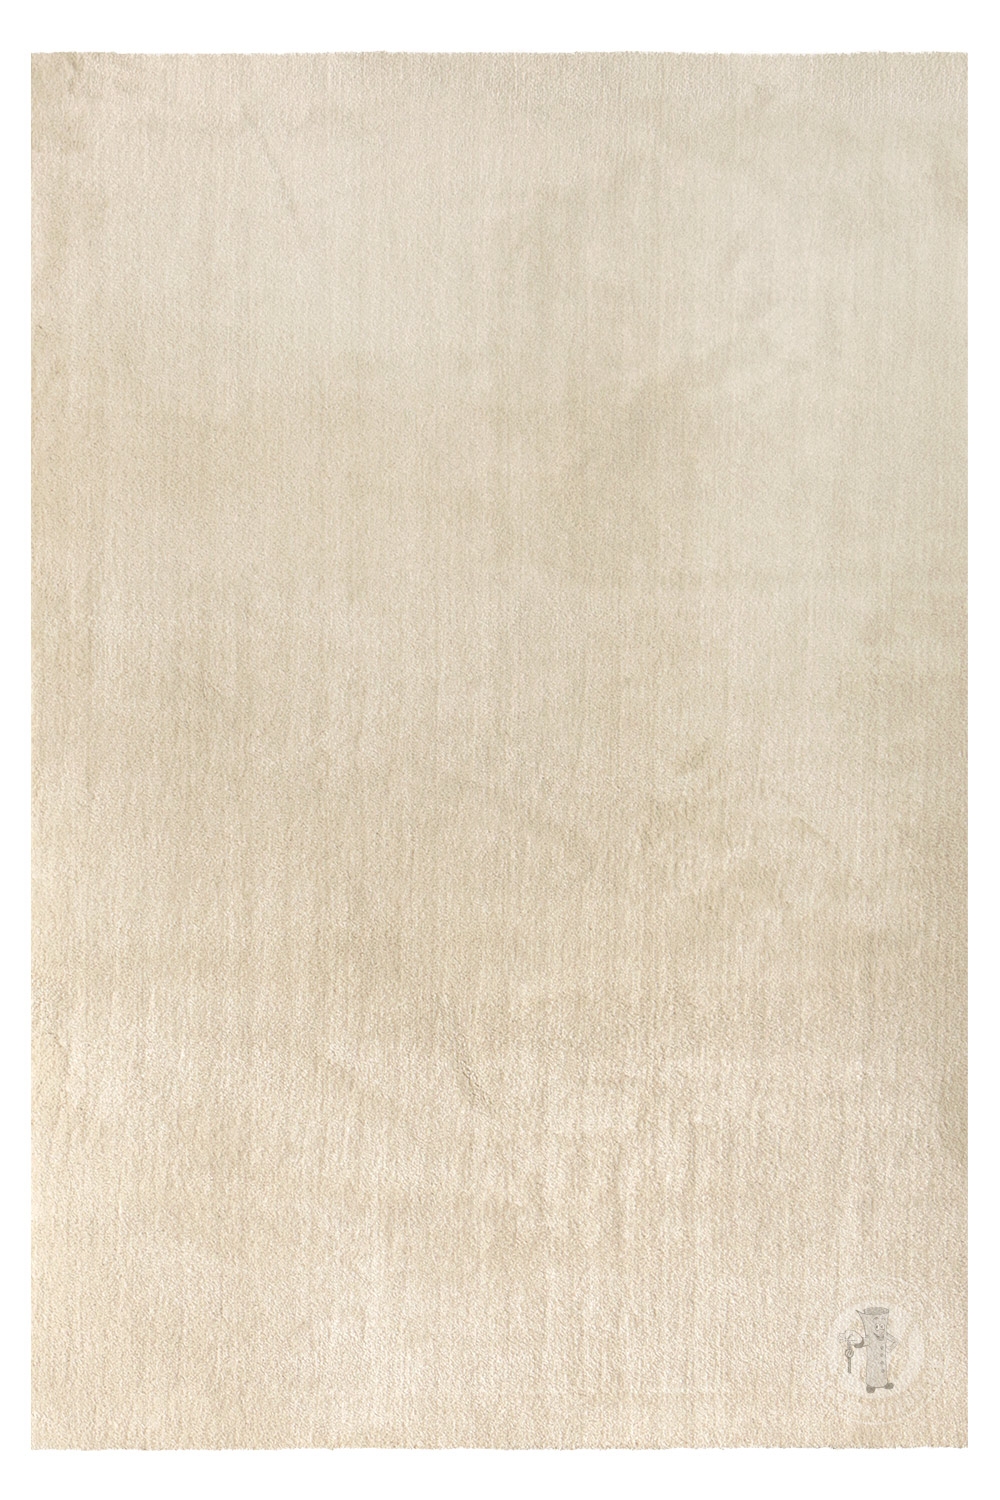 Kusový koberec Labrador 71351 056 Cream 60x115